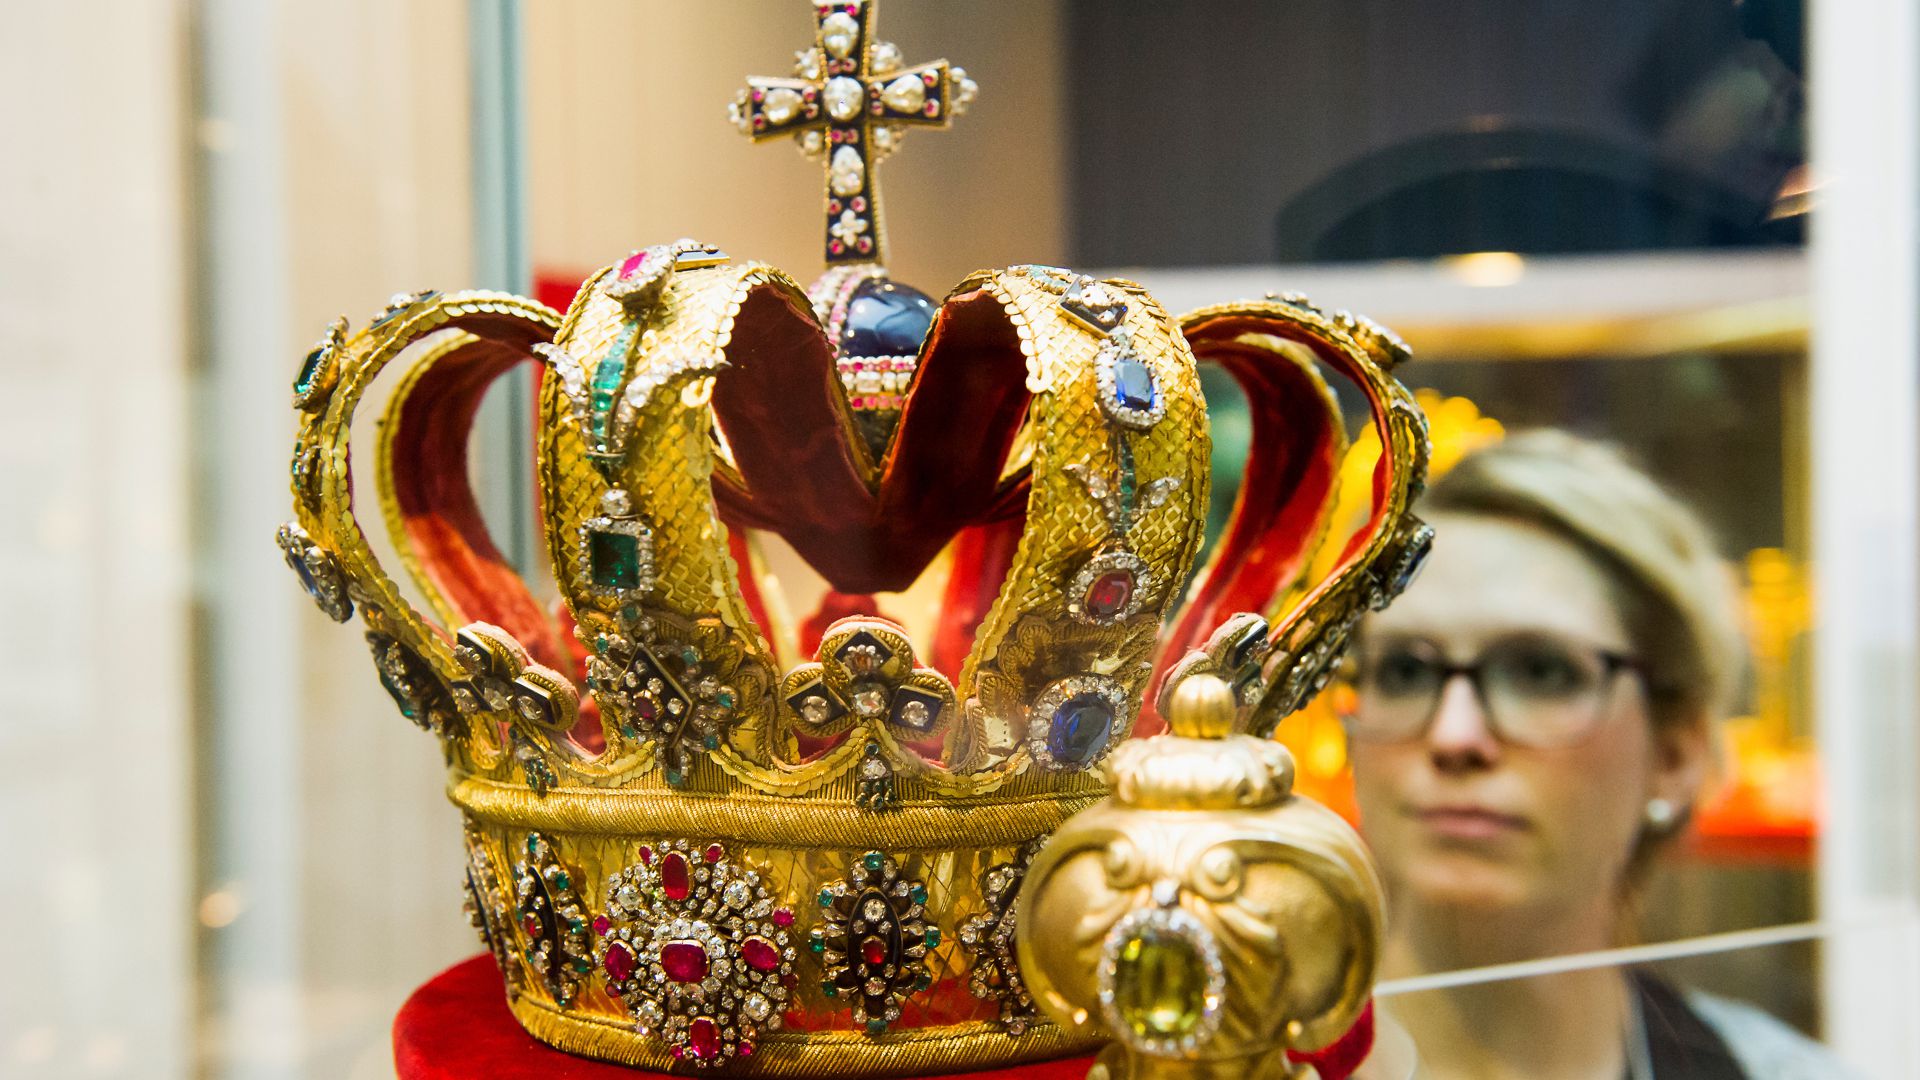 Die großherzoglich-badische Krone im Badischen Landesmuseum Karlsruhe.